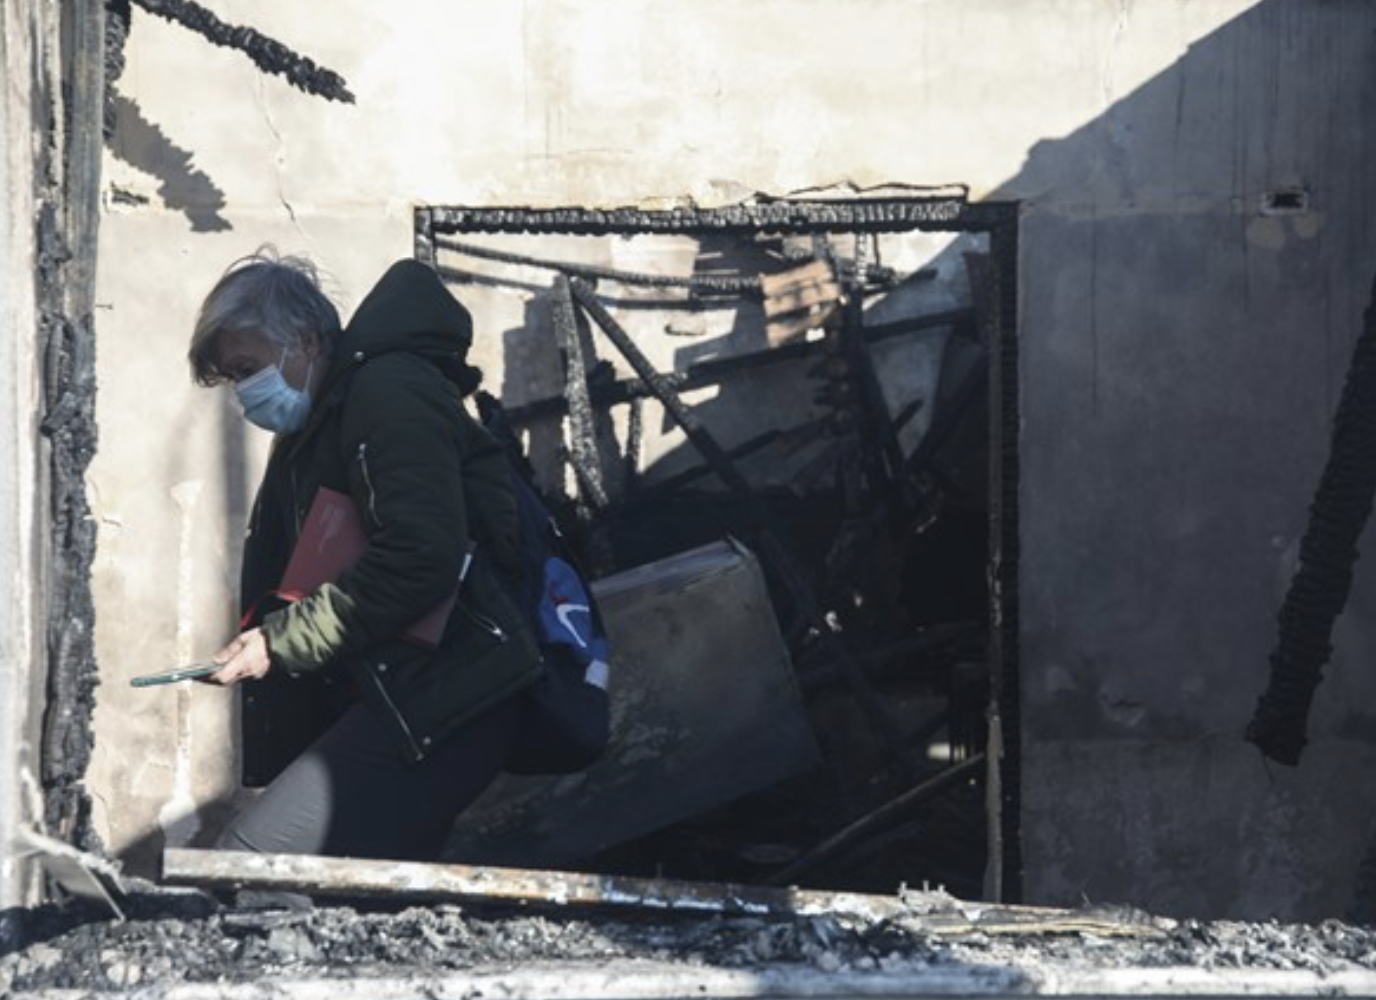 Πως έγινε η τραγωδία στη Θεσσαλονίκη, όπου η 31χρονη μητέρα κάηκε ζωντανή μαζί με τα δύο παιδιά της (εικόνες)